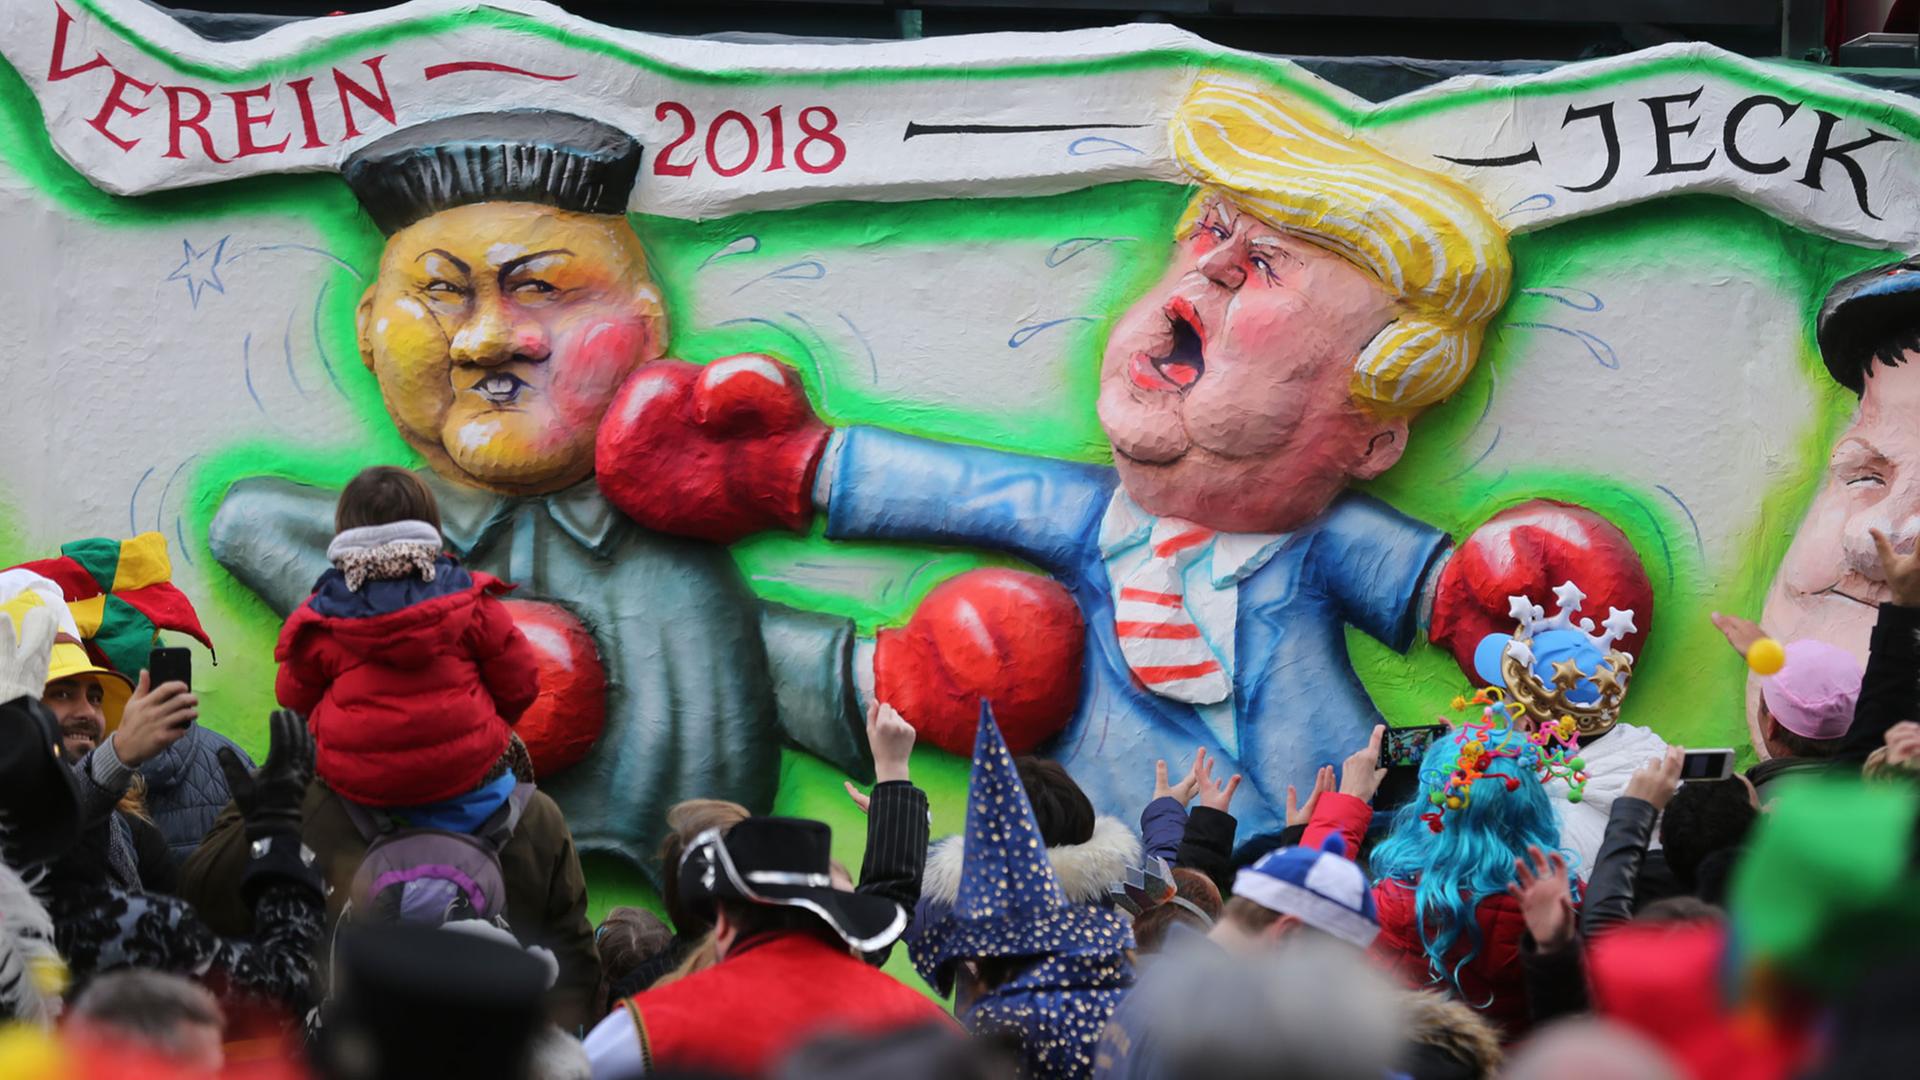 12.02.2018, Nordrhein-Westfalen, Düsseldorf, Rosenmontagsumzug: Ein politischer Mottowagen zeigt Donald Trump (r), den 45. Präsidenten der Vereinigten Staaten, und Kim Jong Un (l), Machthaber von Nordkorea, bei einem Boxkampf.